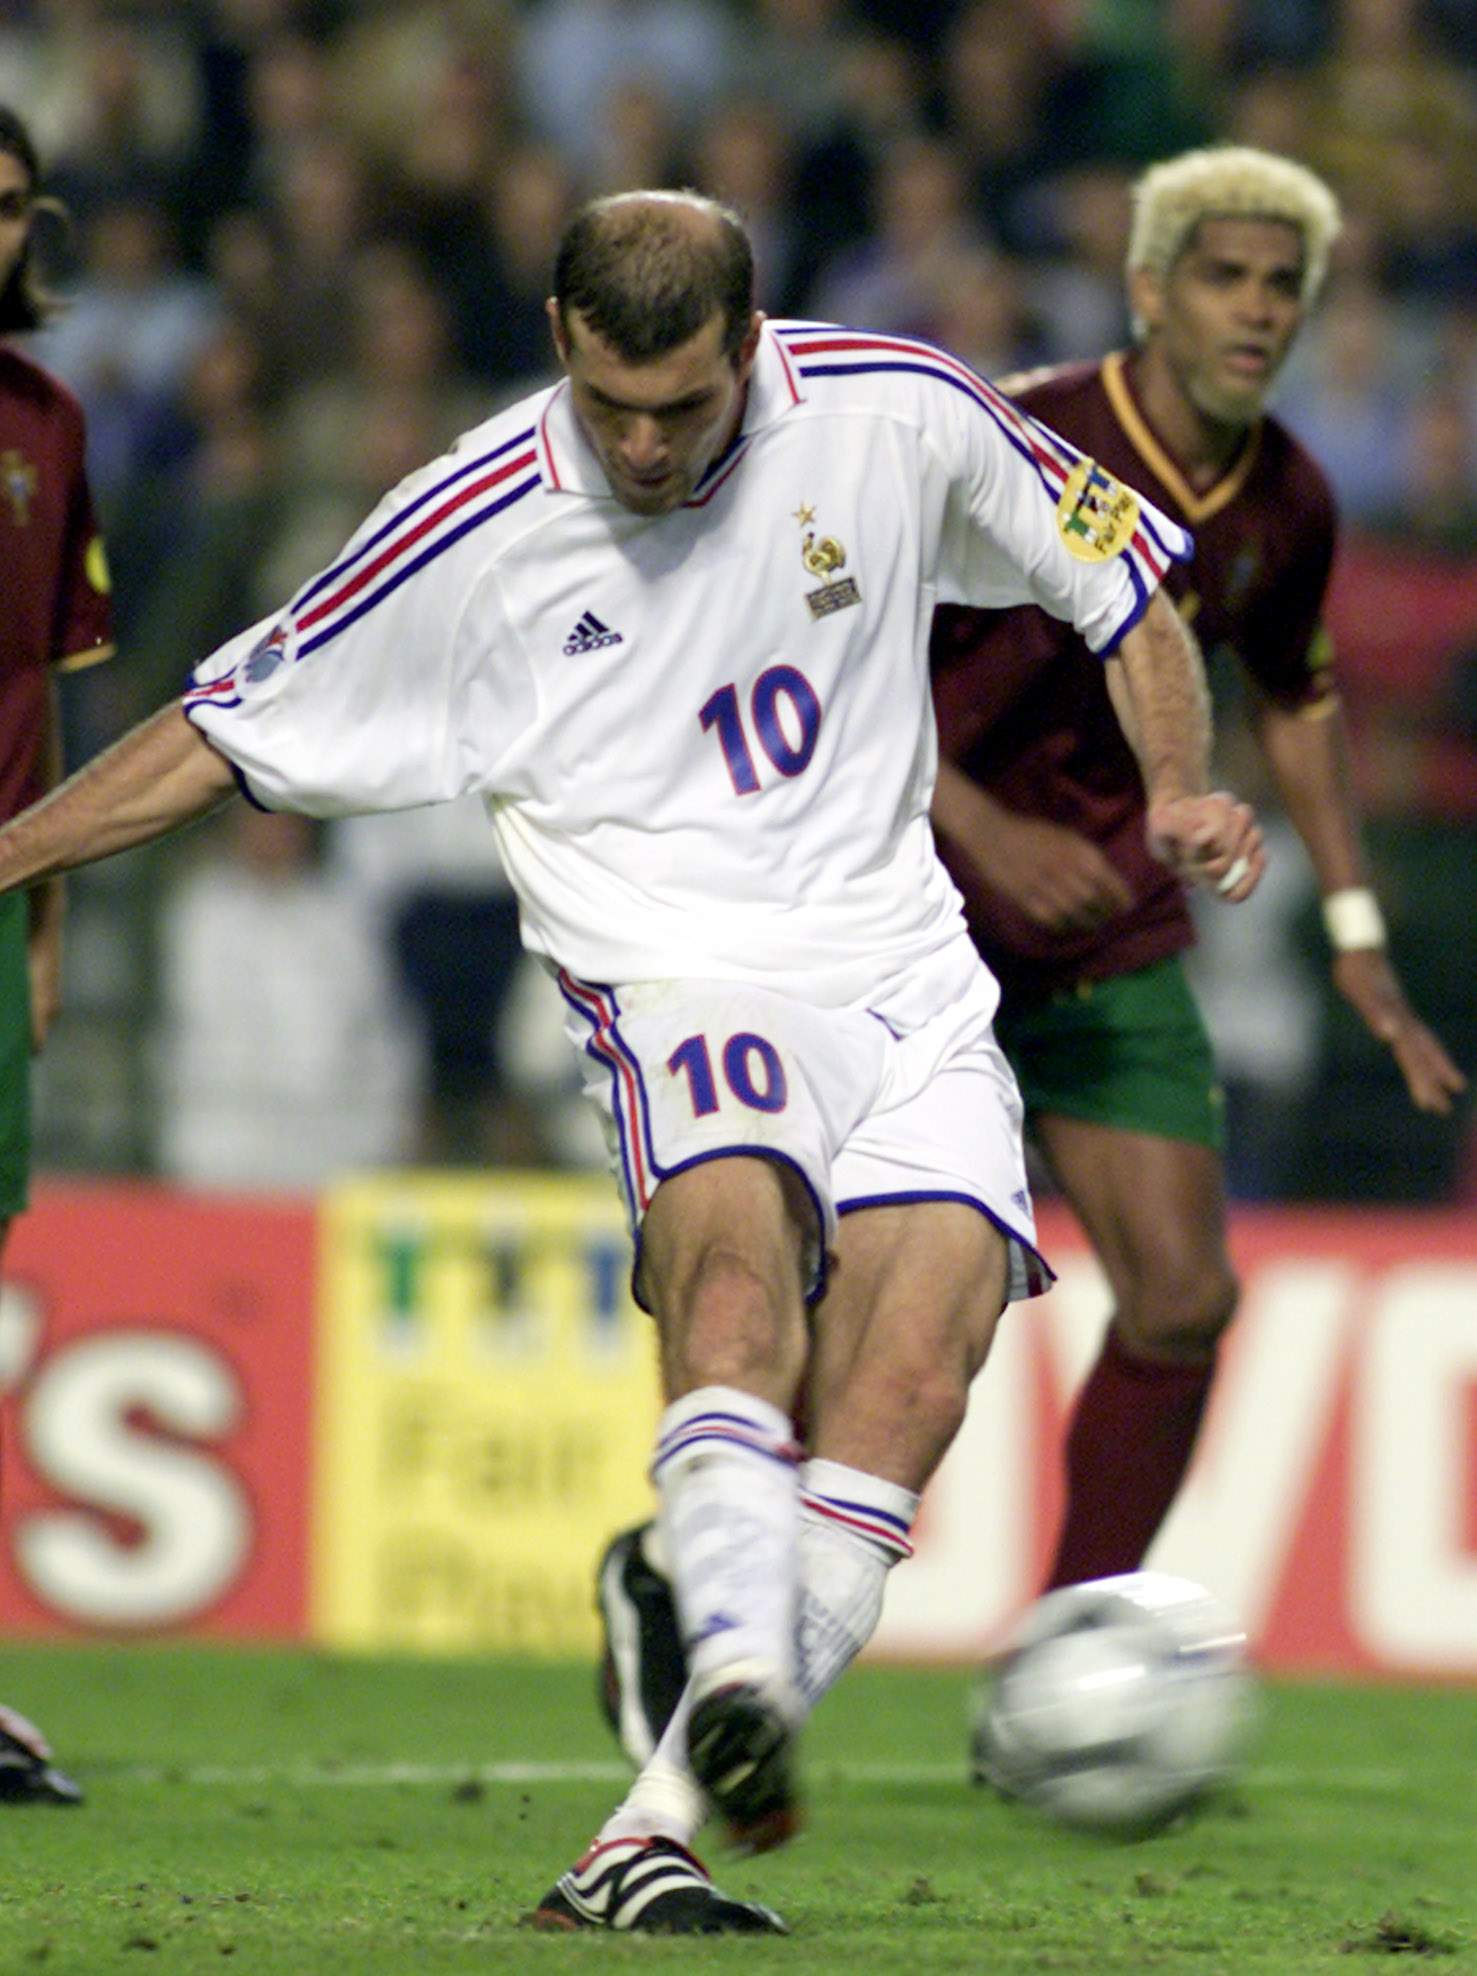 Zinedine Zidane. Briljant teknik och speluppfattningsförmåga kännetecknade fransmannen. Utsedd till världens bästa fotbollsspelare fyra gånger.